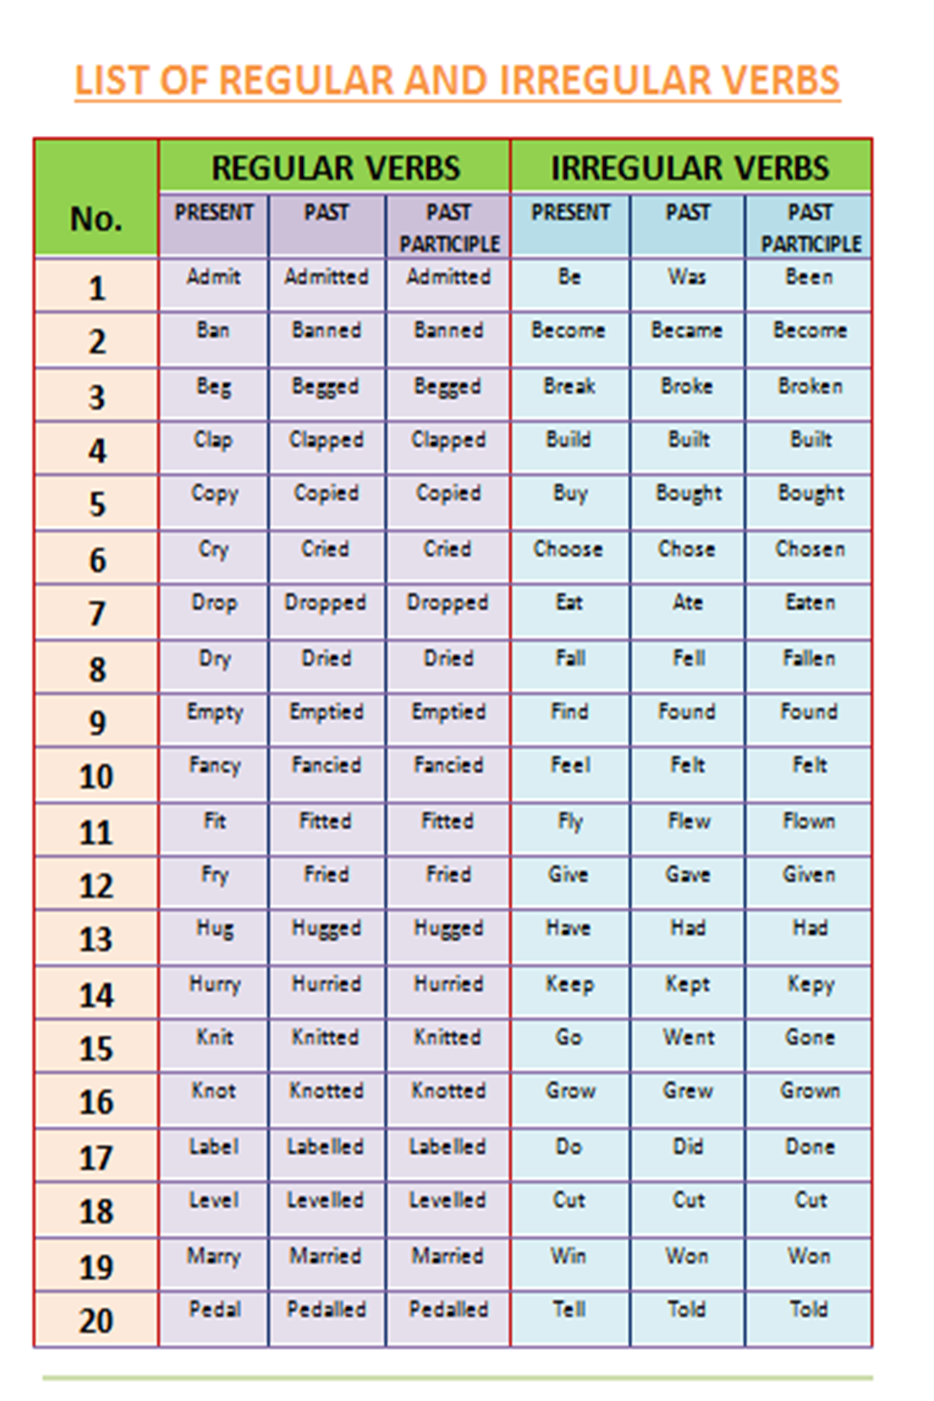 list-of-regular-irregular-verbs-fff